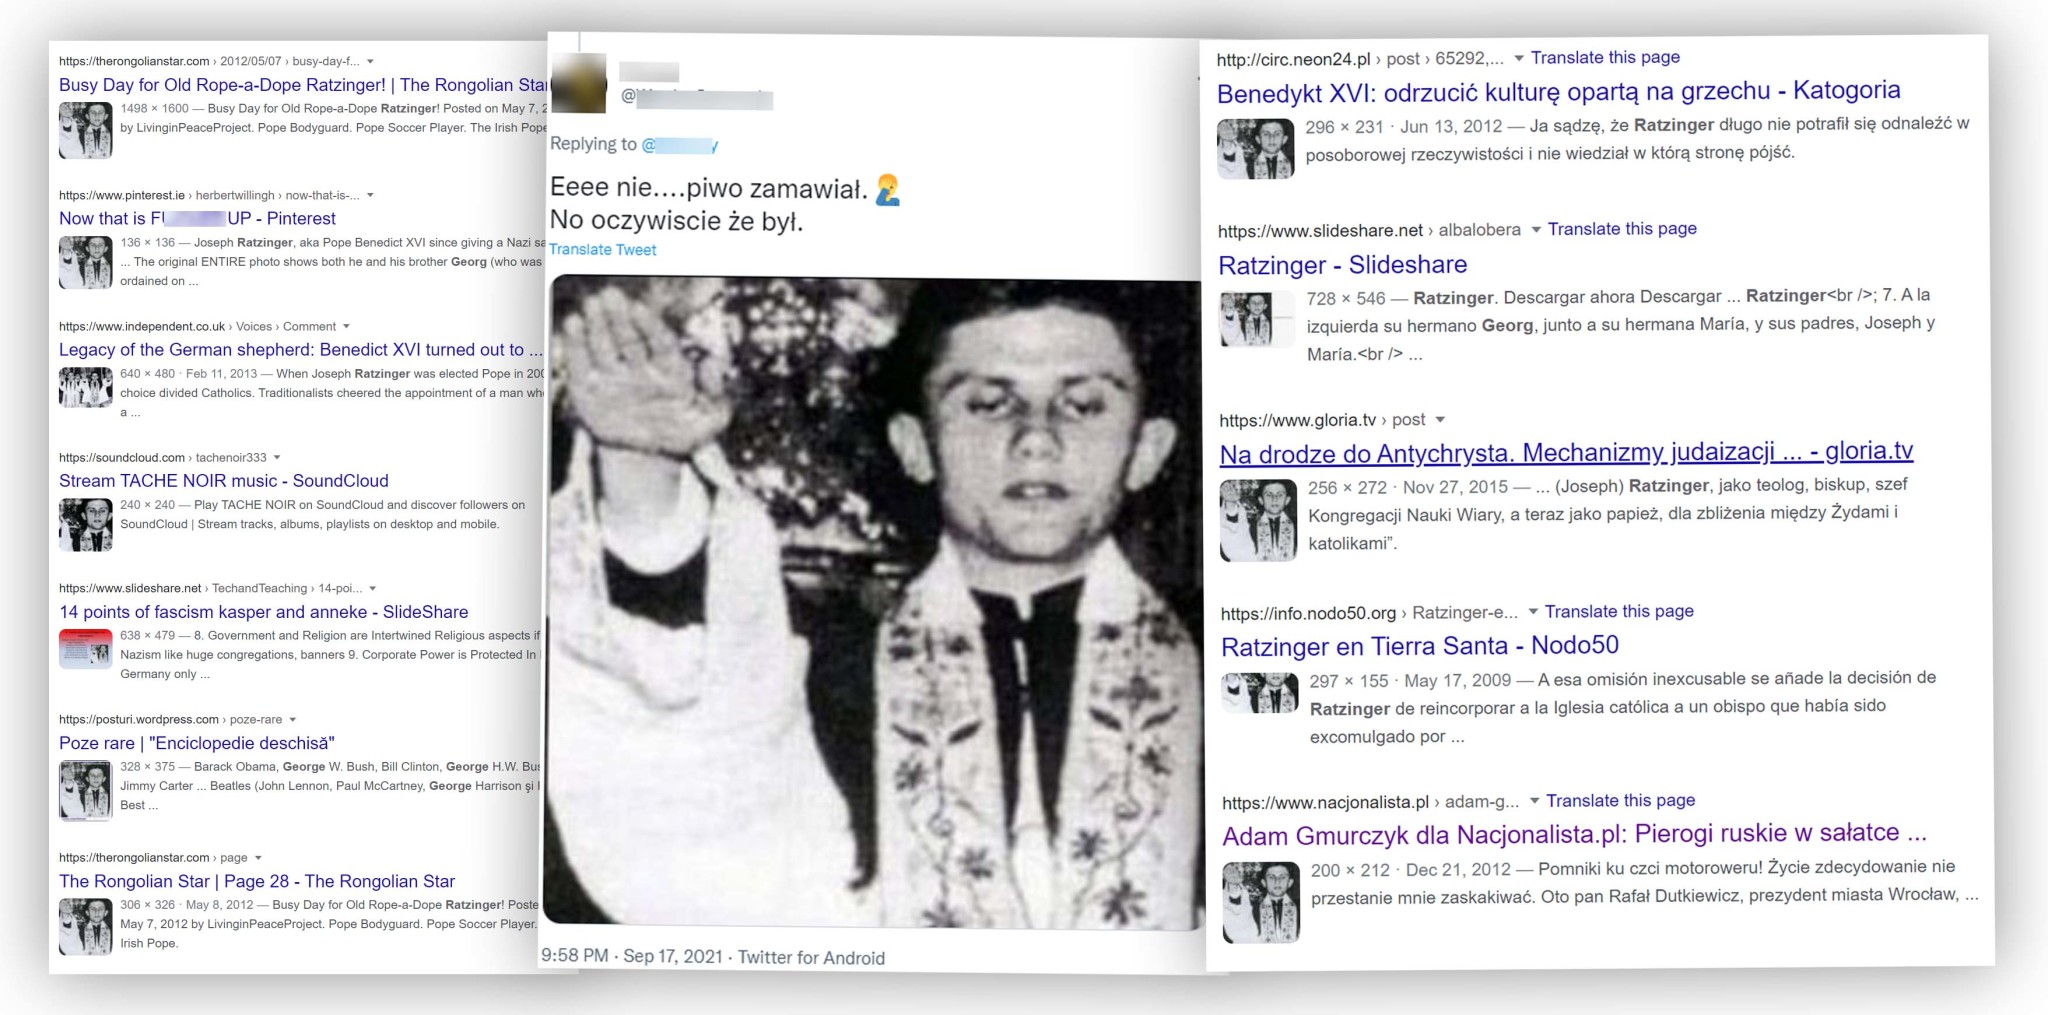 Ta fotografia Józefa Ratzingera od lat krąży w sieci